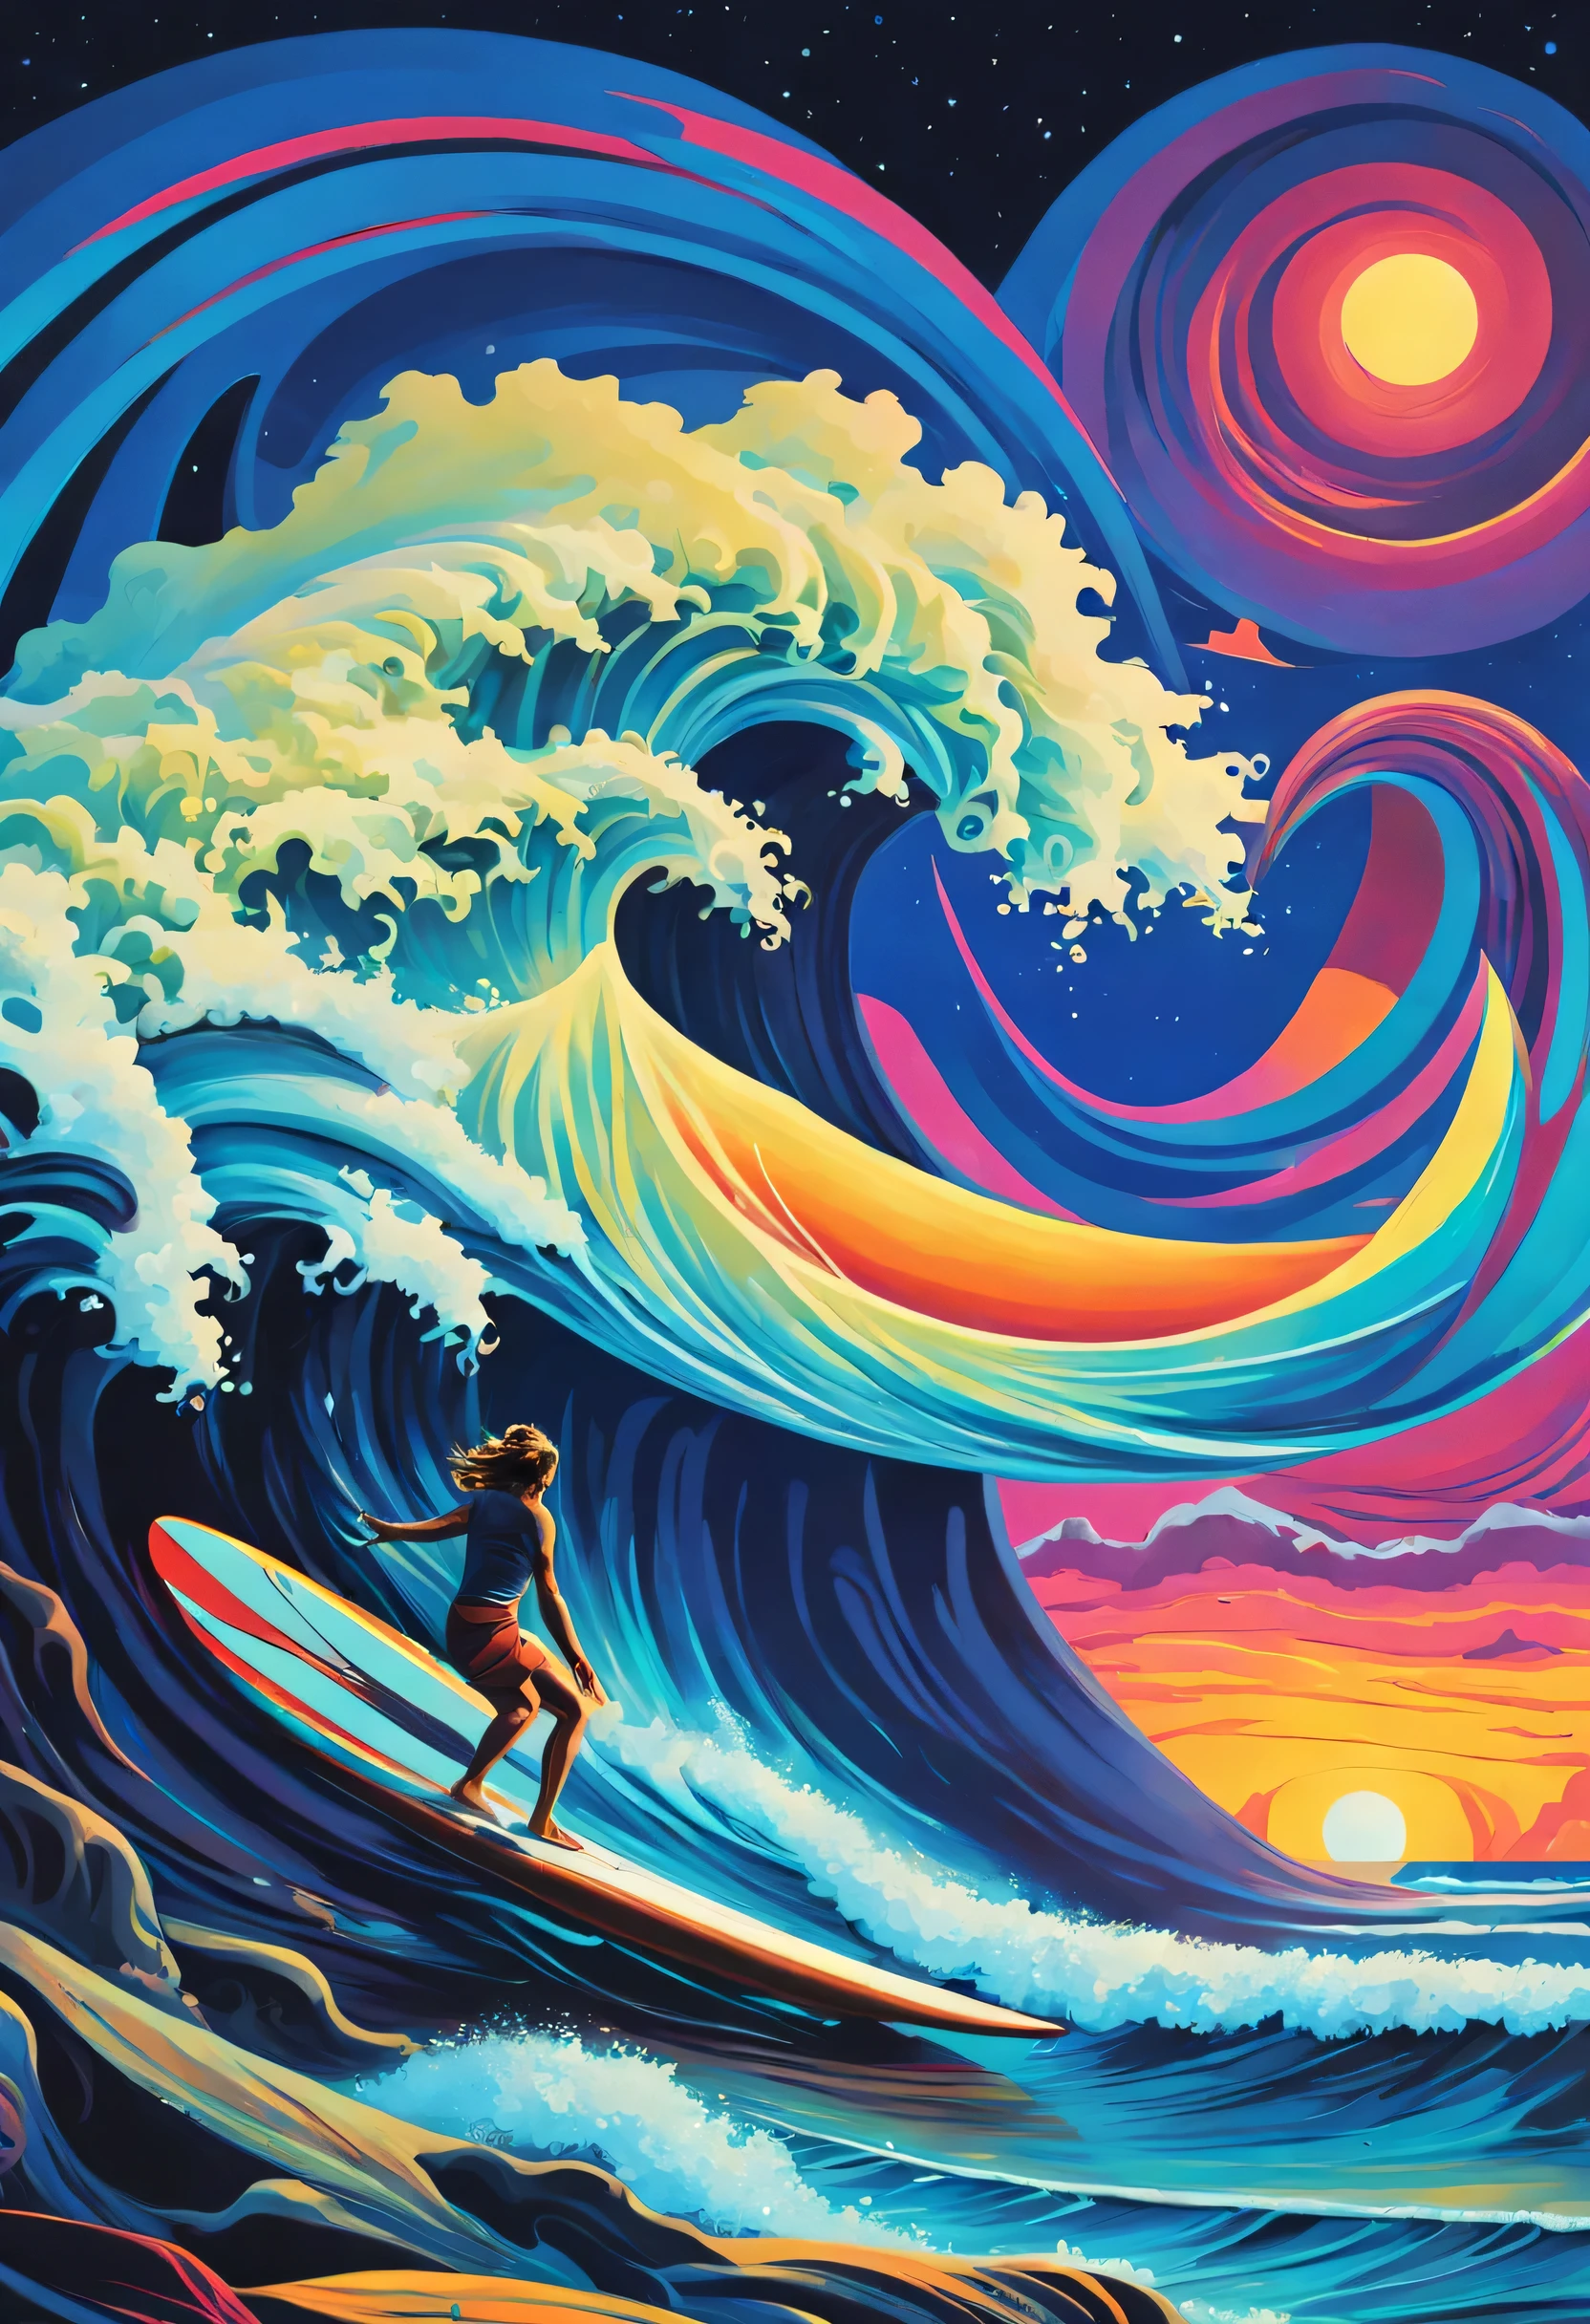 Erschaffe ein surreales CGI-Kunstwerk, das Philosophie und Surfen in einem extravagant seltsamen Stil vereint.. Stellen Sie sich eine Meereslandschaft in der Dämmerung vor, in der sich Wellen in Schwimmkörper verwandeln., arkane Symbole. Zeigt einen Surfer, der auf einem schwebenden Brett durch kosmisches Wissen navigiert.. Verleihen Sie lebendigen, Außerweltliche Farben mit einem Hauch von Surrealismus im Stil von Salvador Dalí.. Halten Sie es prägnant, mach es seltsam, und sorgen für einen exzentrischen Mix aus Philosophie und Surfen, der über das Gewöhnliche hinausgeht